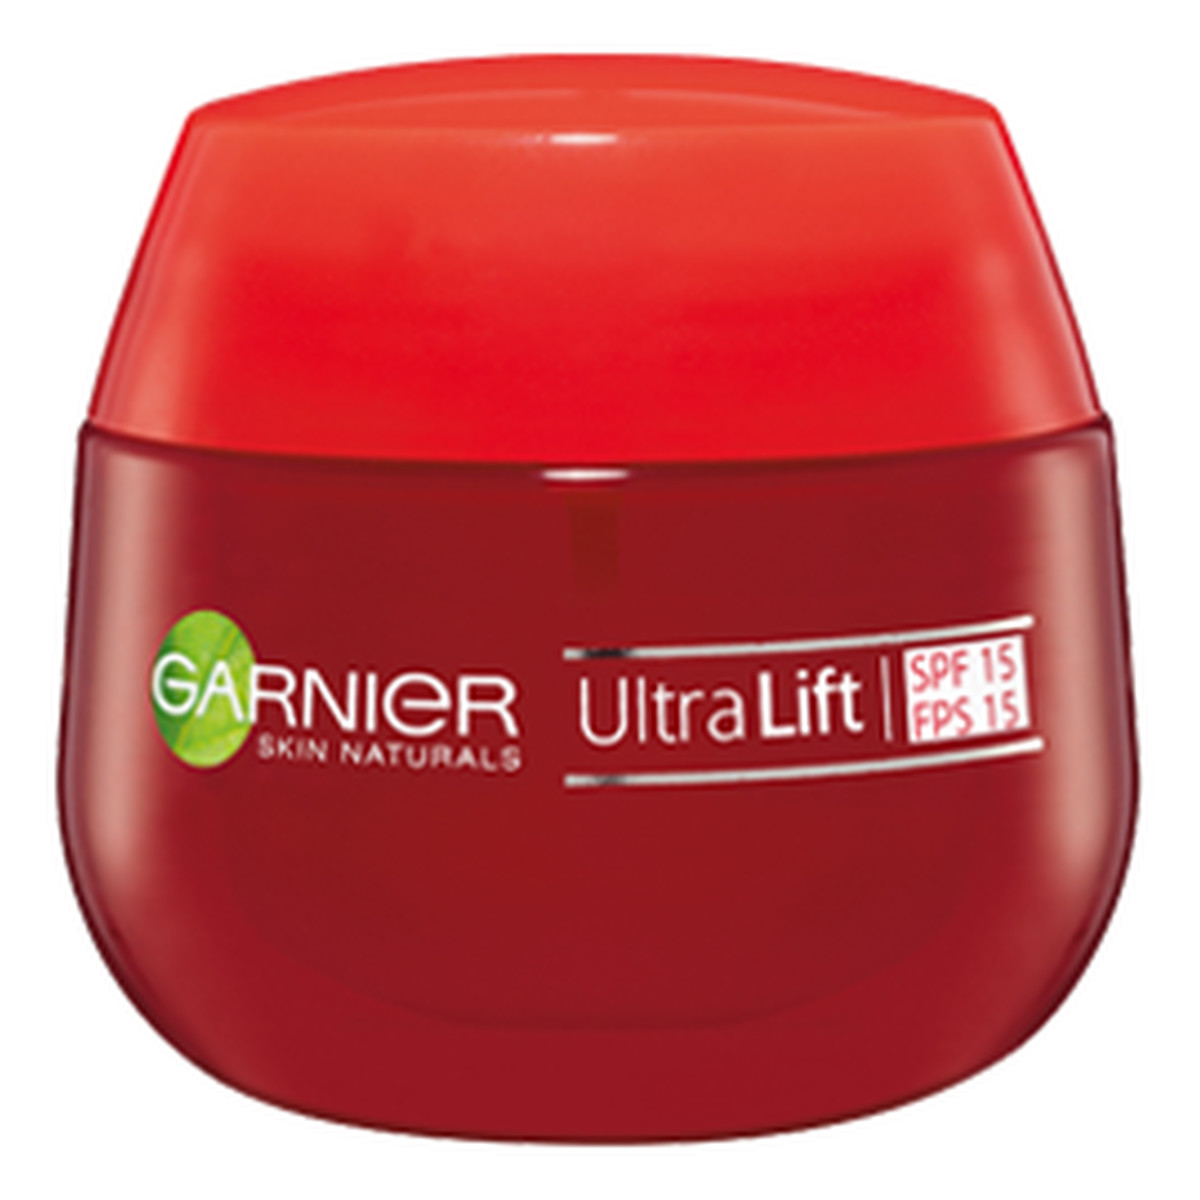 Garnier UltraLift Skin Naturals Krem Przeciwzmarszczkowo-ujędrniający SPF15 50ml